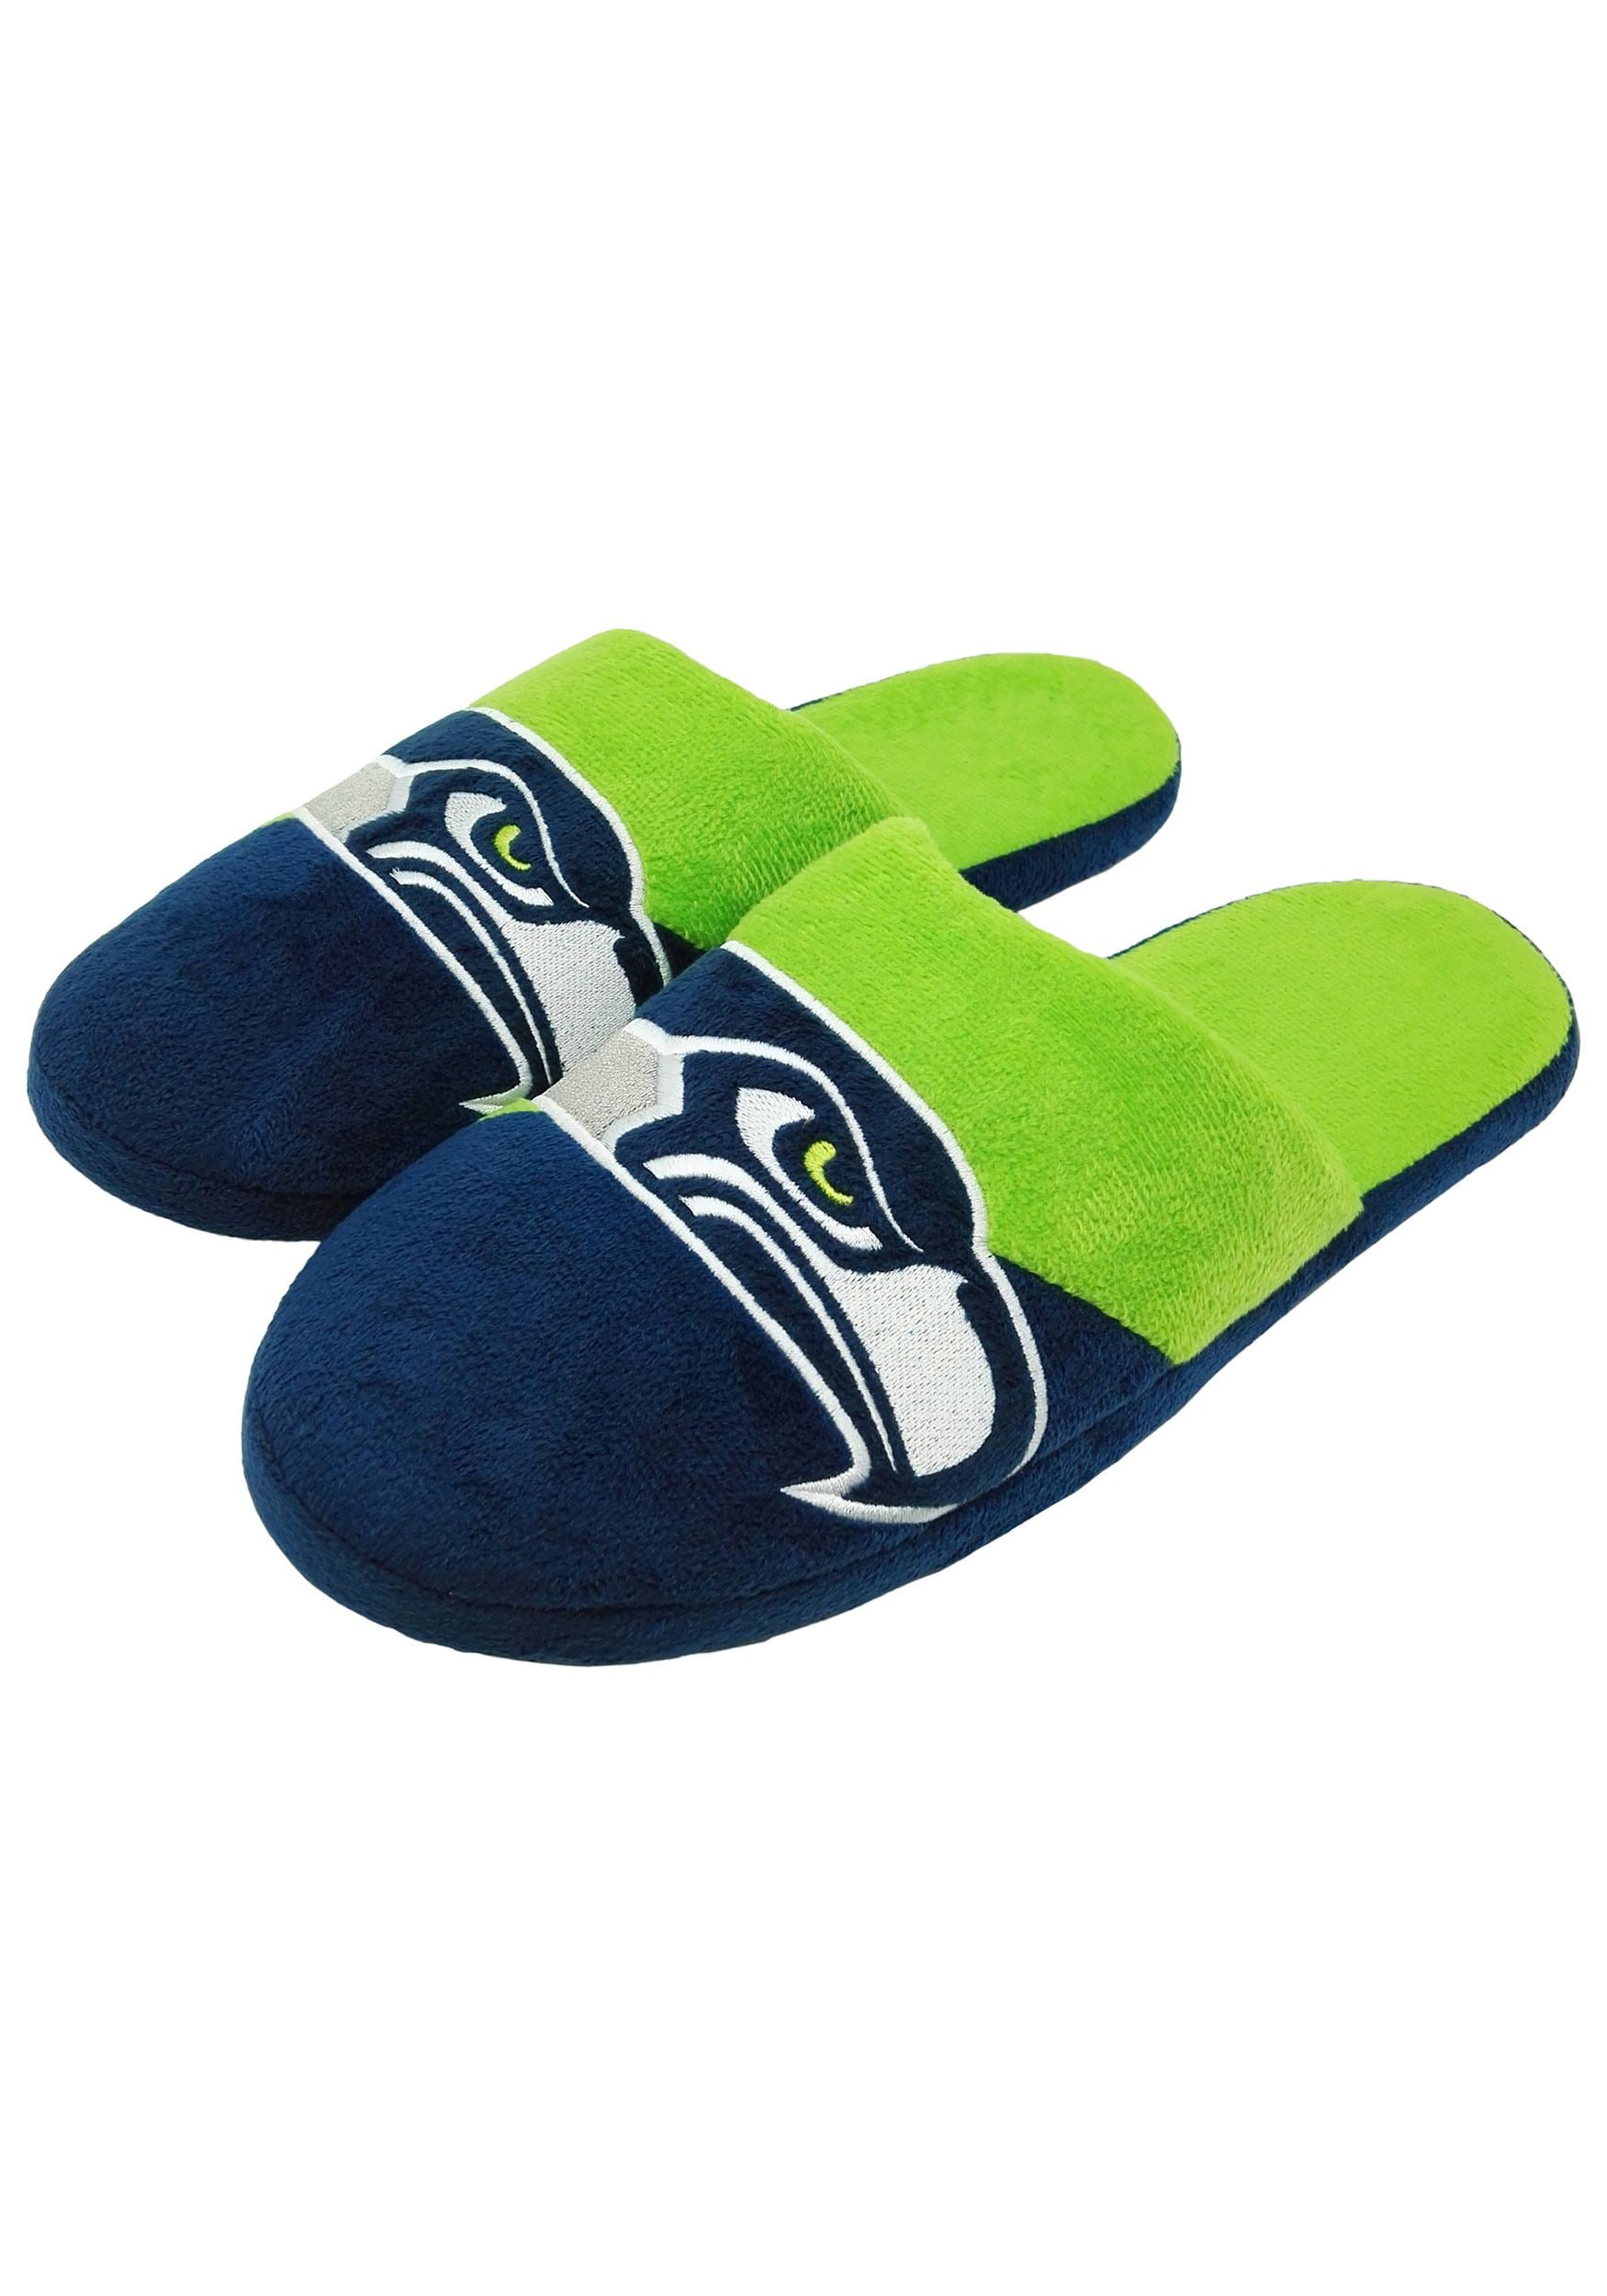 seahawks slippers walmart